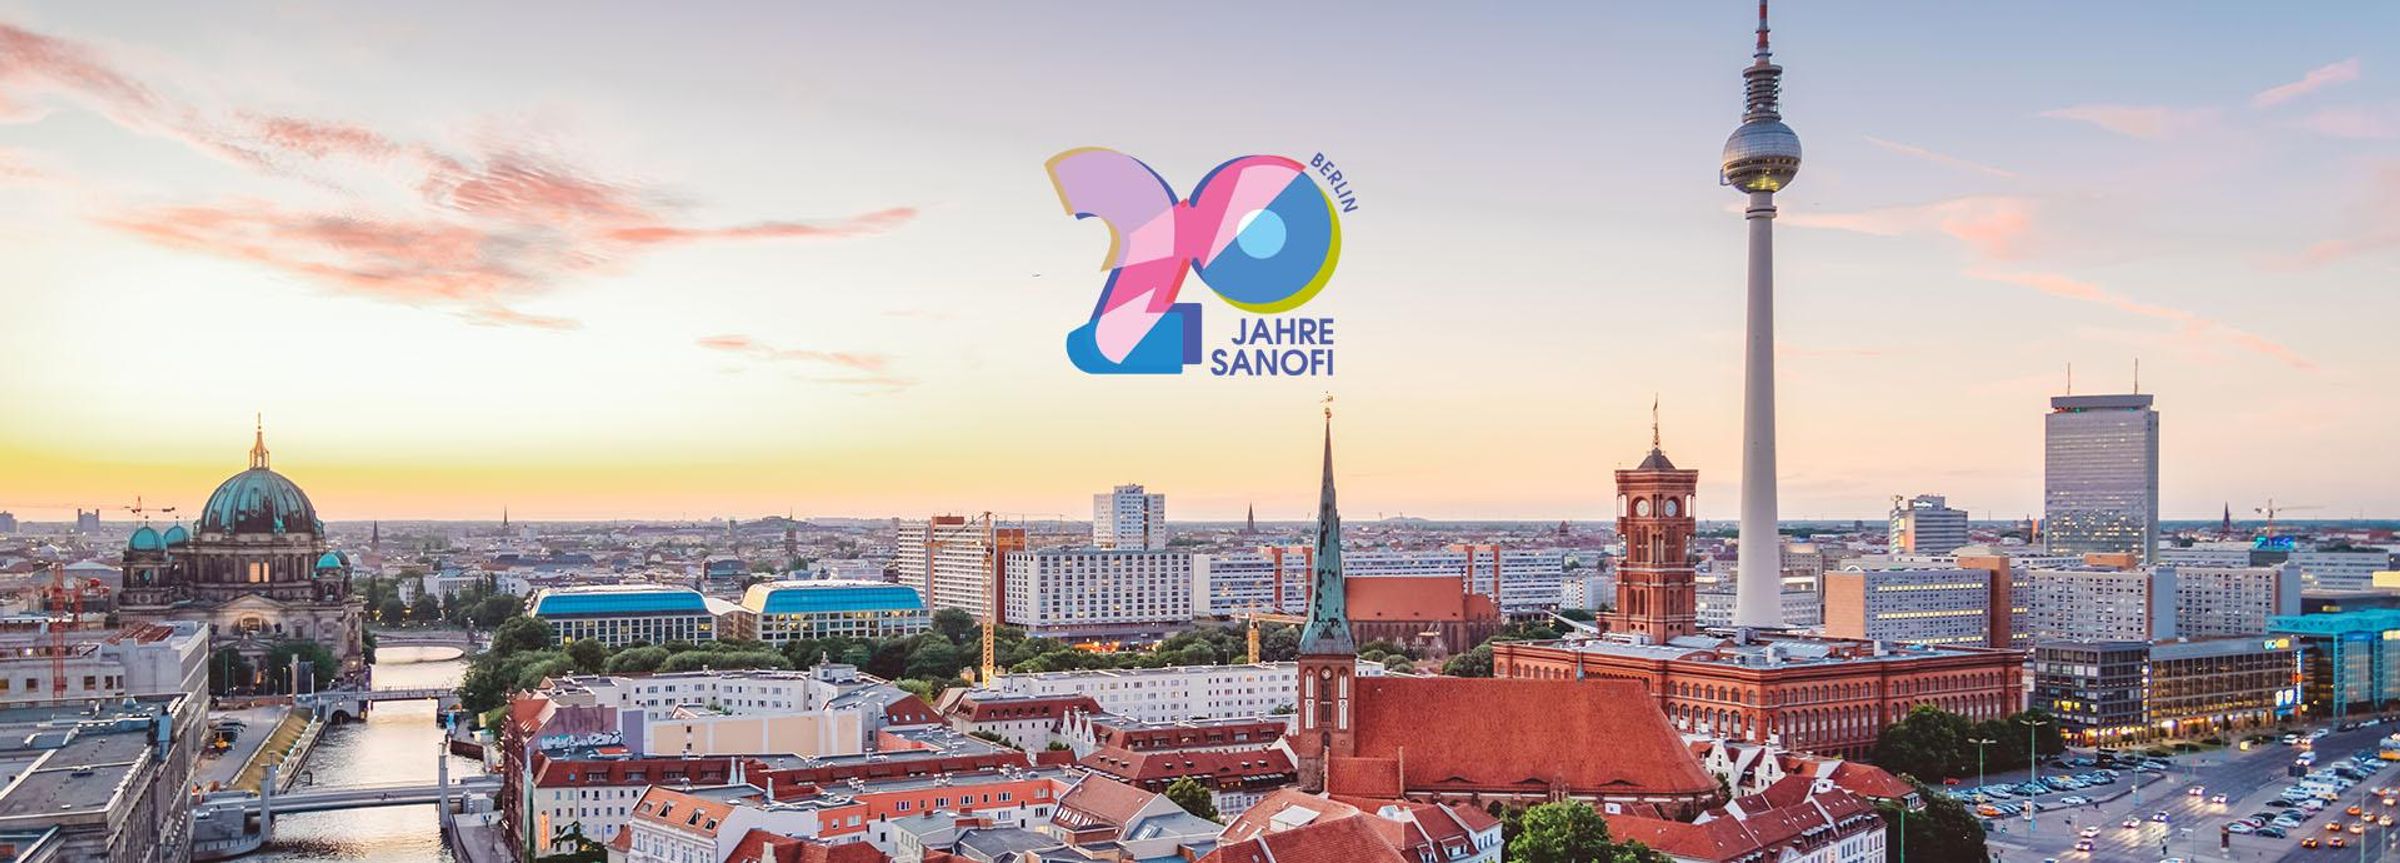 20 Jahre Sanofi in Berlin: Unser Engagement in der Hauptstadt